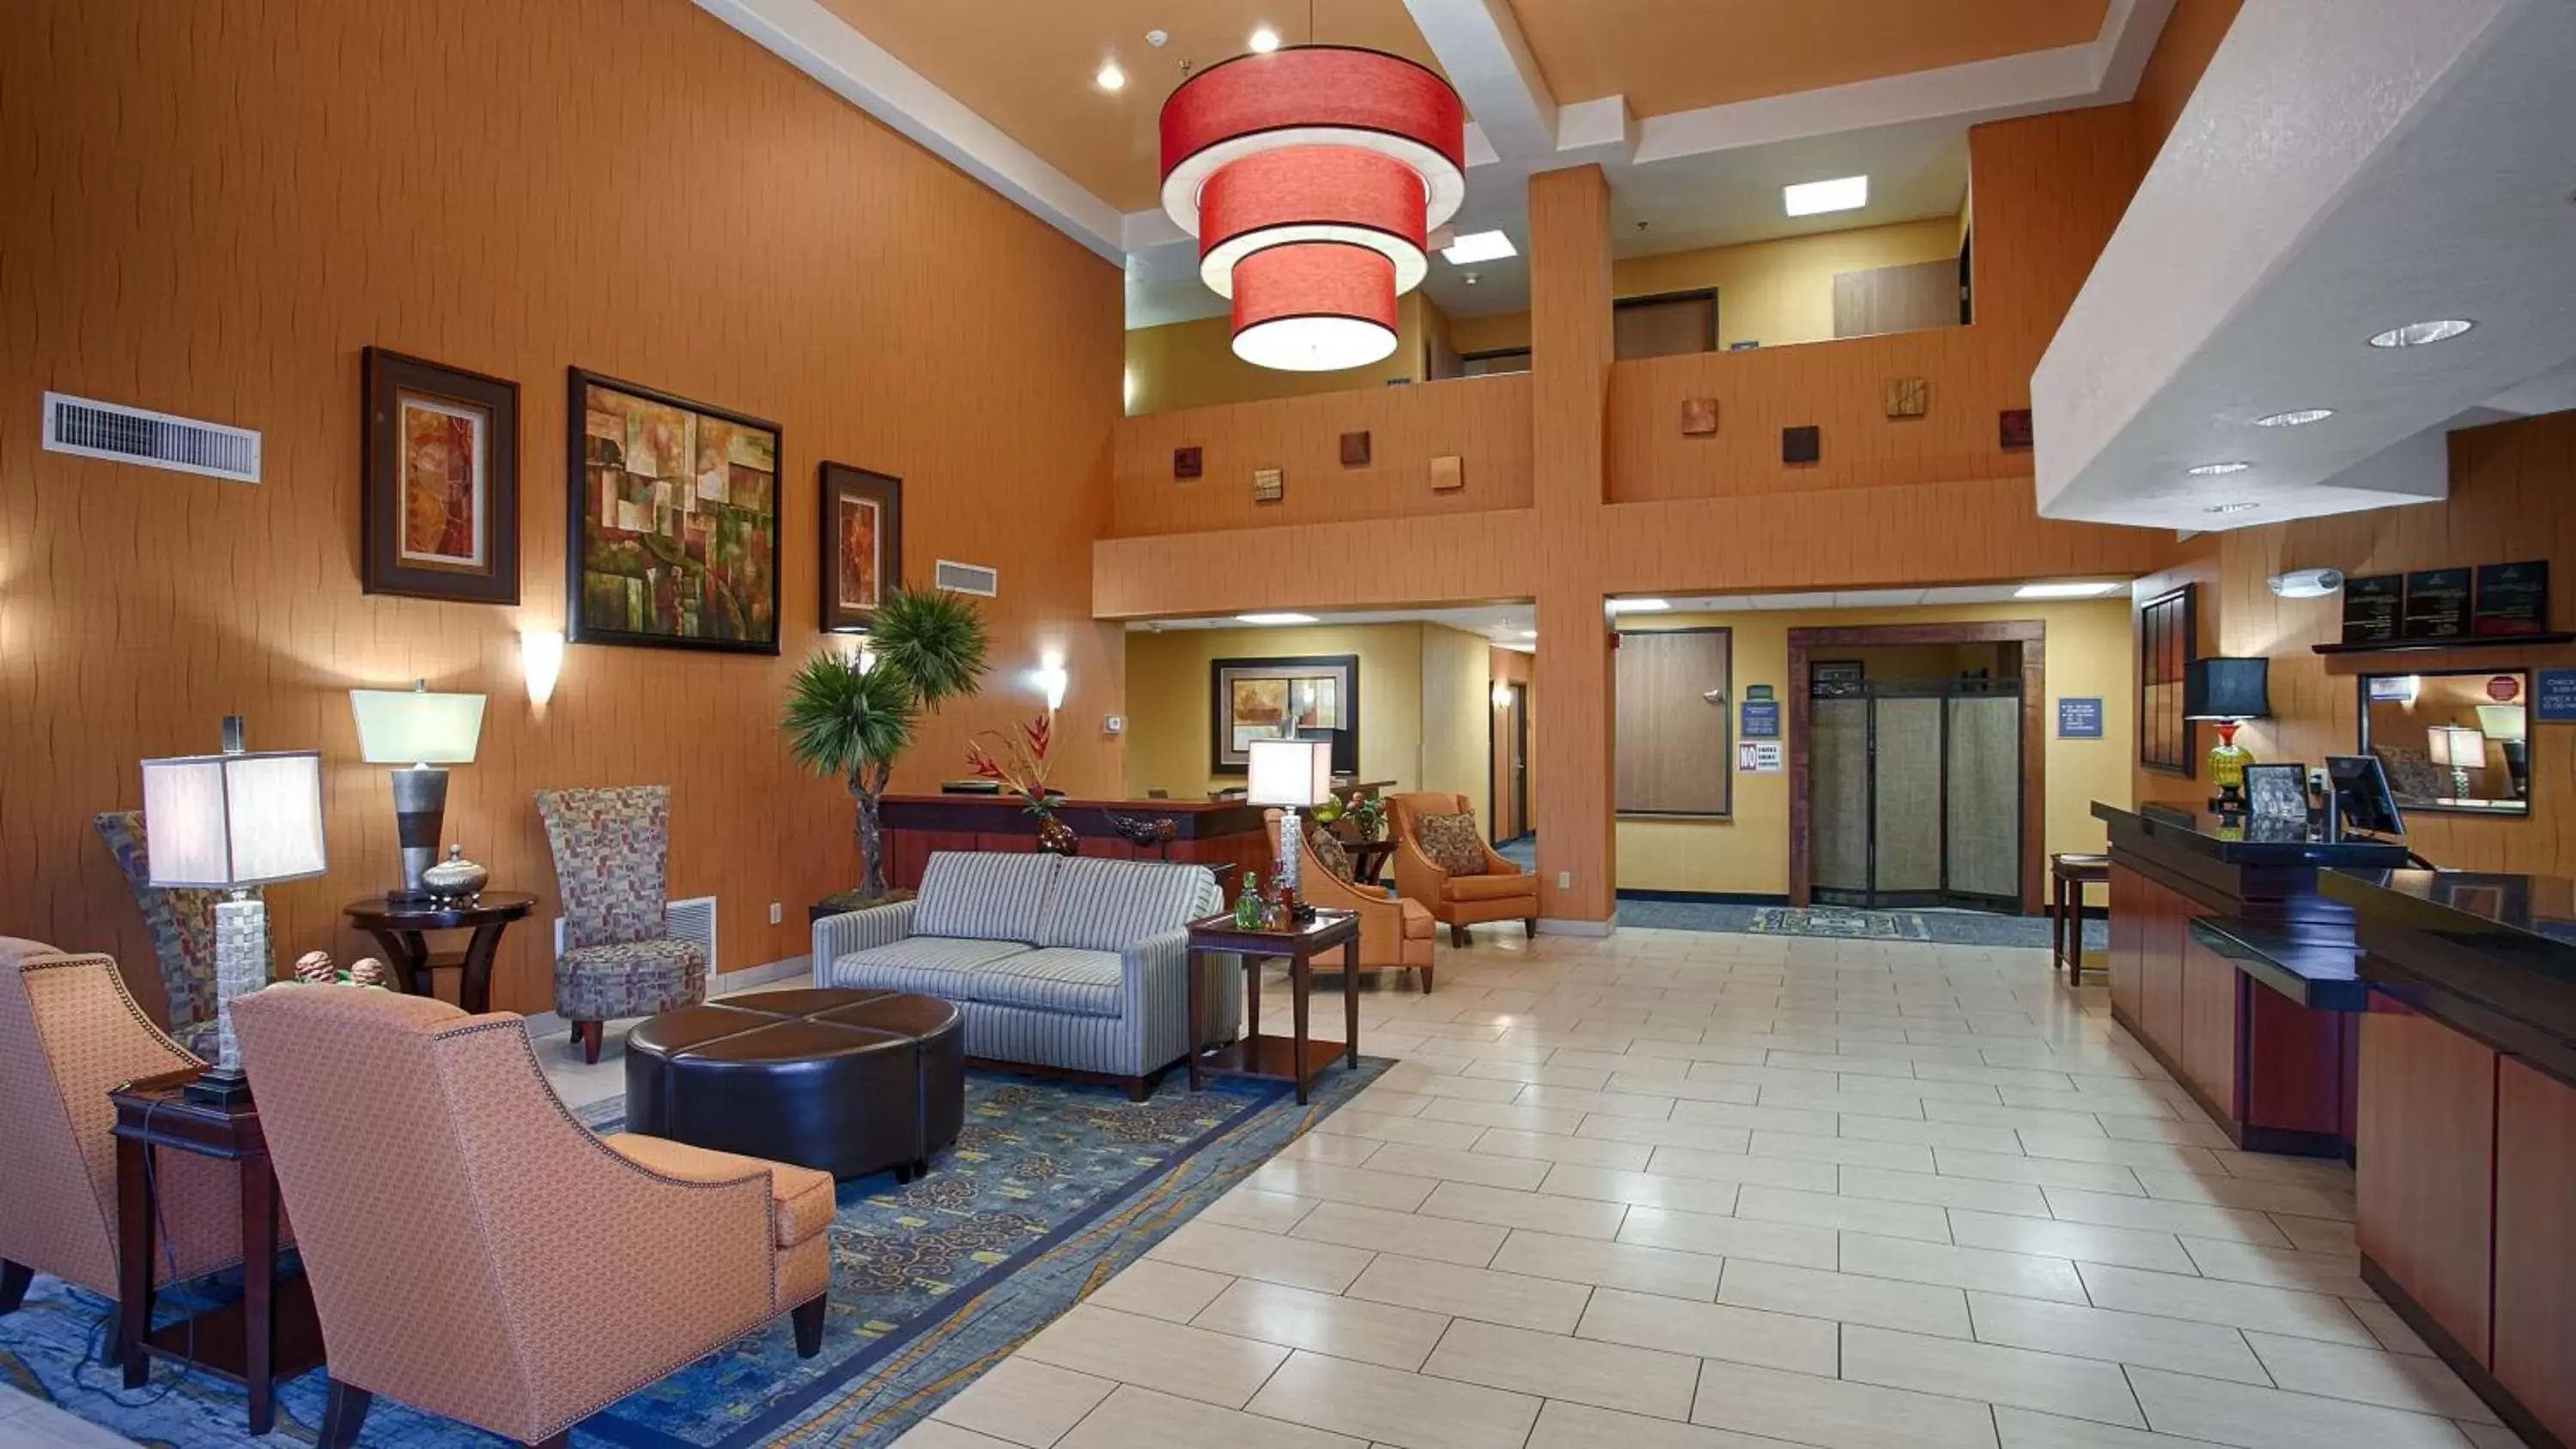 Lobby or reception, Lobby/Reception in Best Western PLUS Fresno Inn